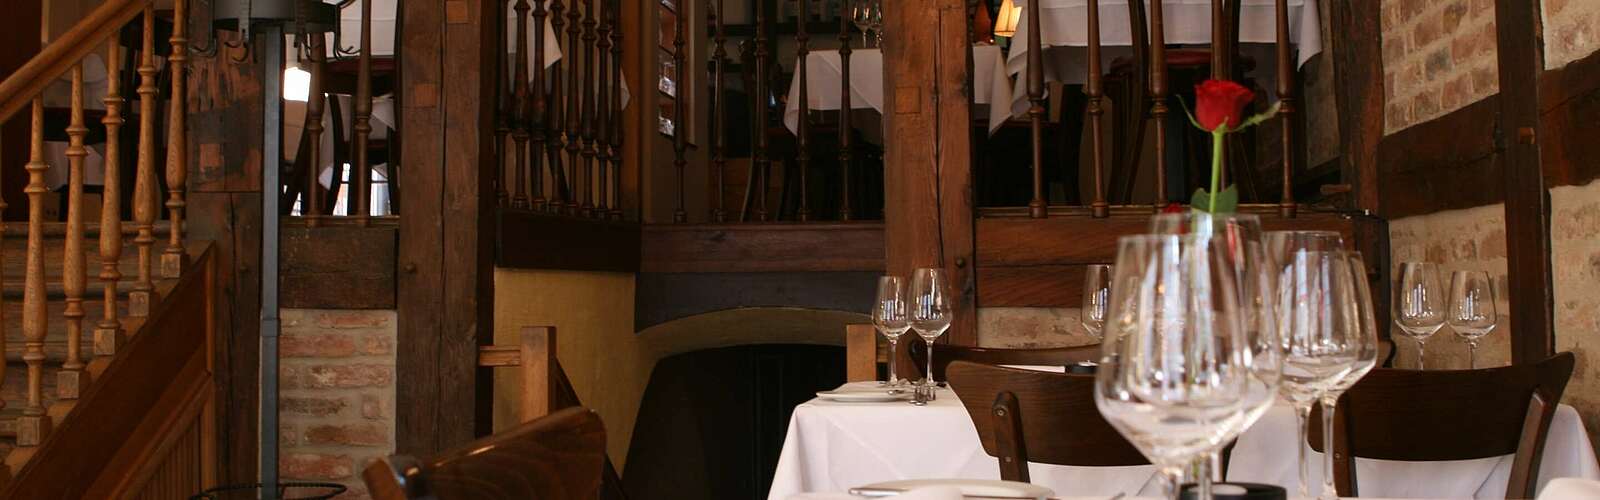 Innenräume des Restaurants Juliette,
        
    

        Foto: TMB-Fotoarchiv/Steffen Lehmann